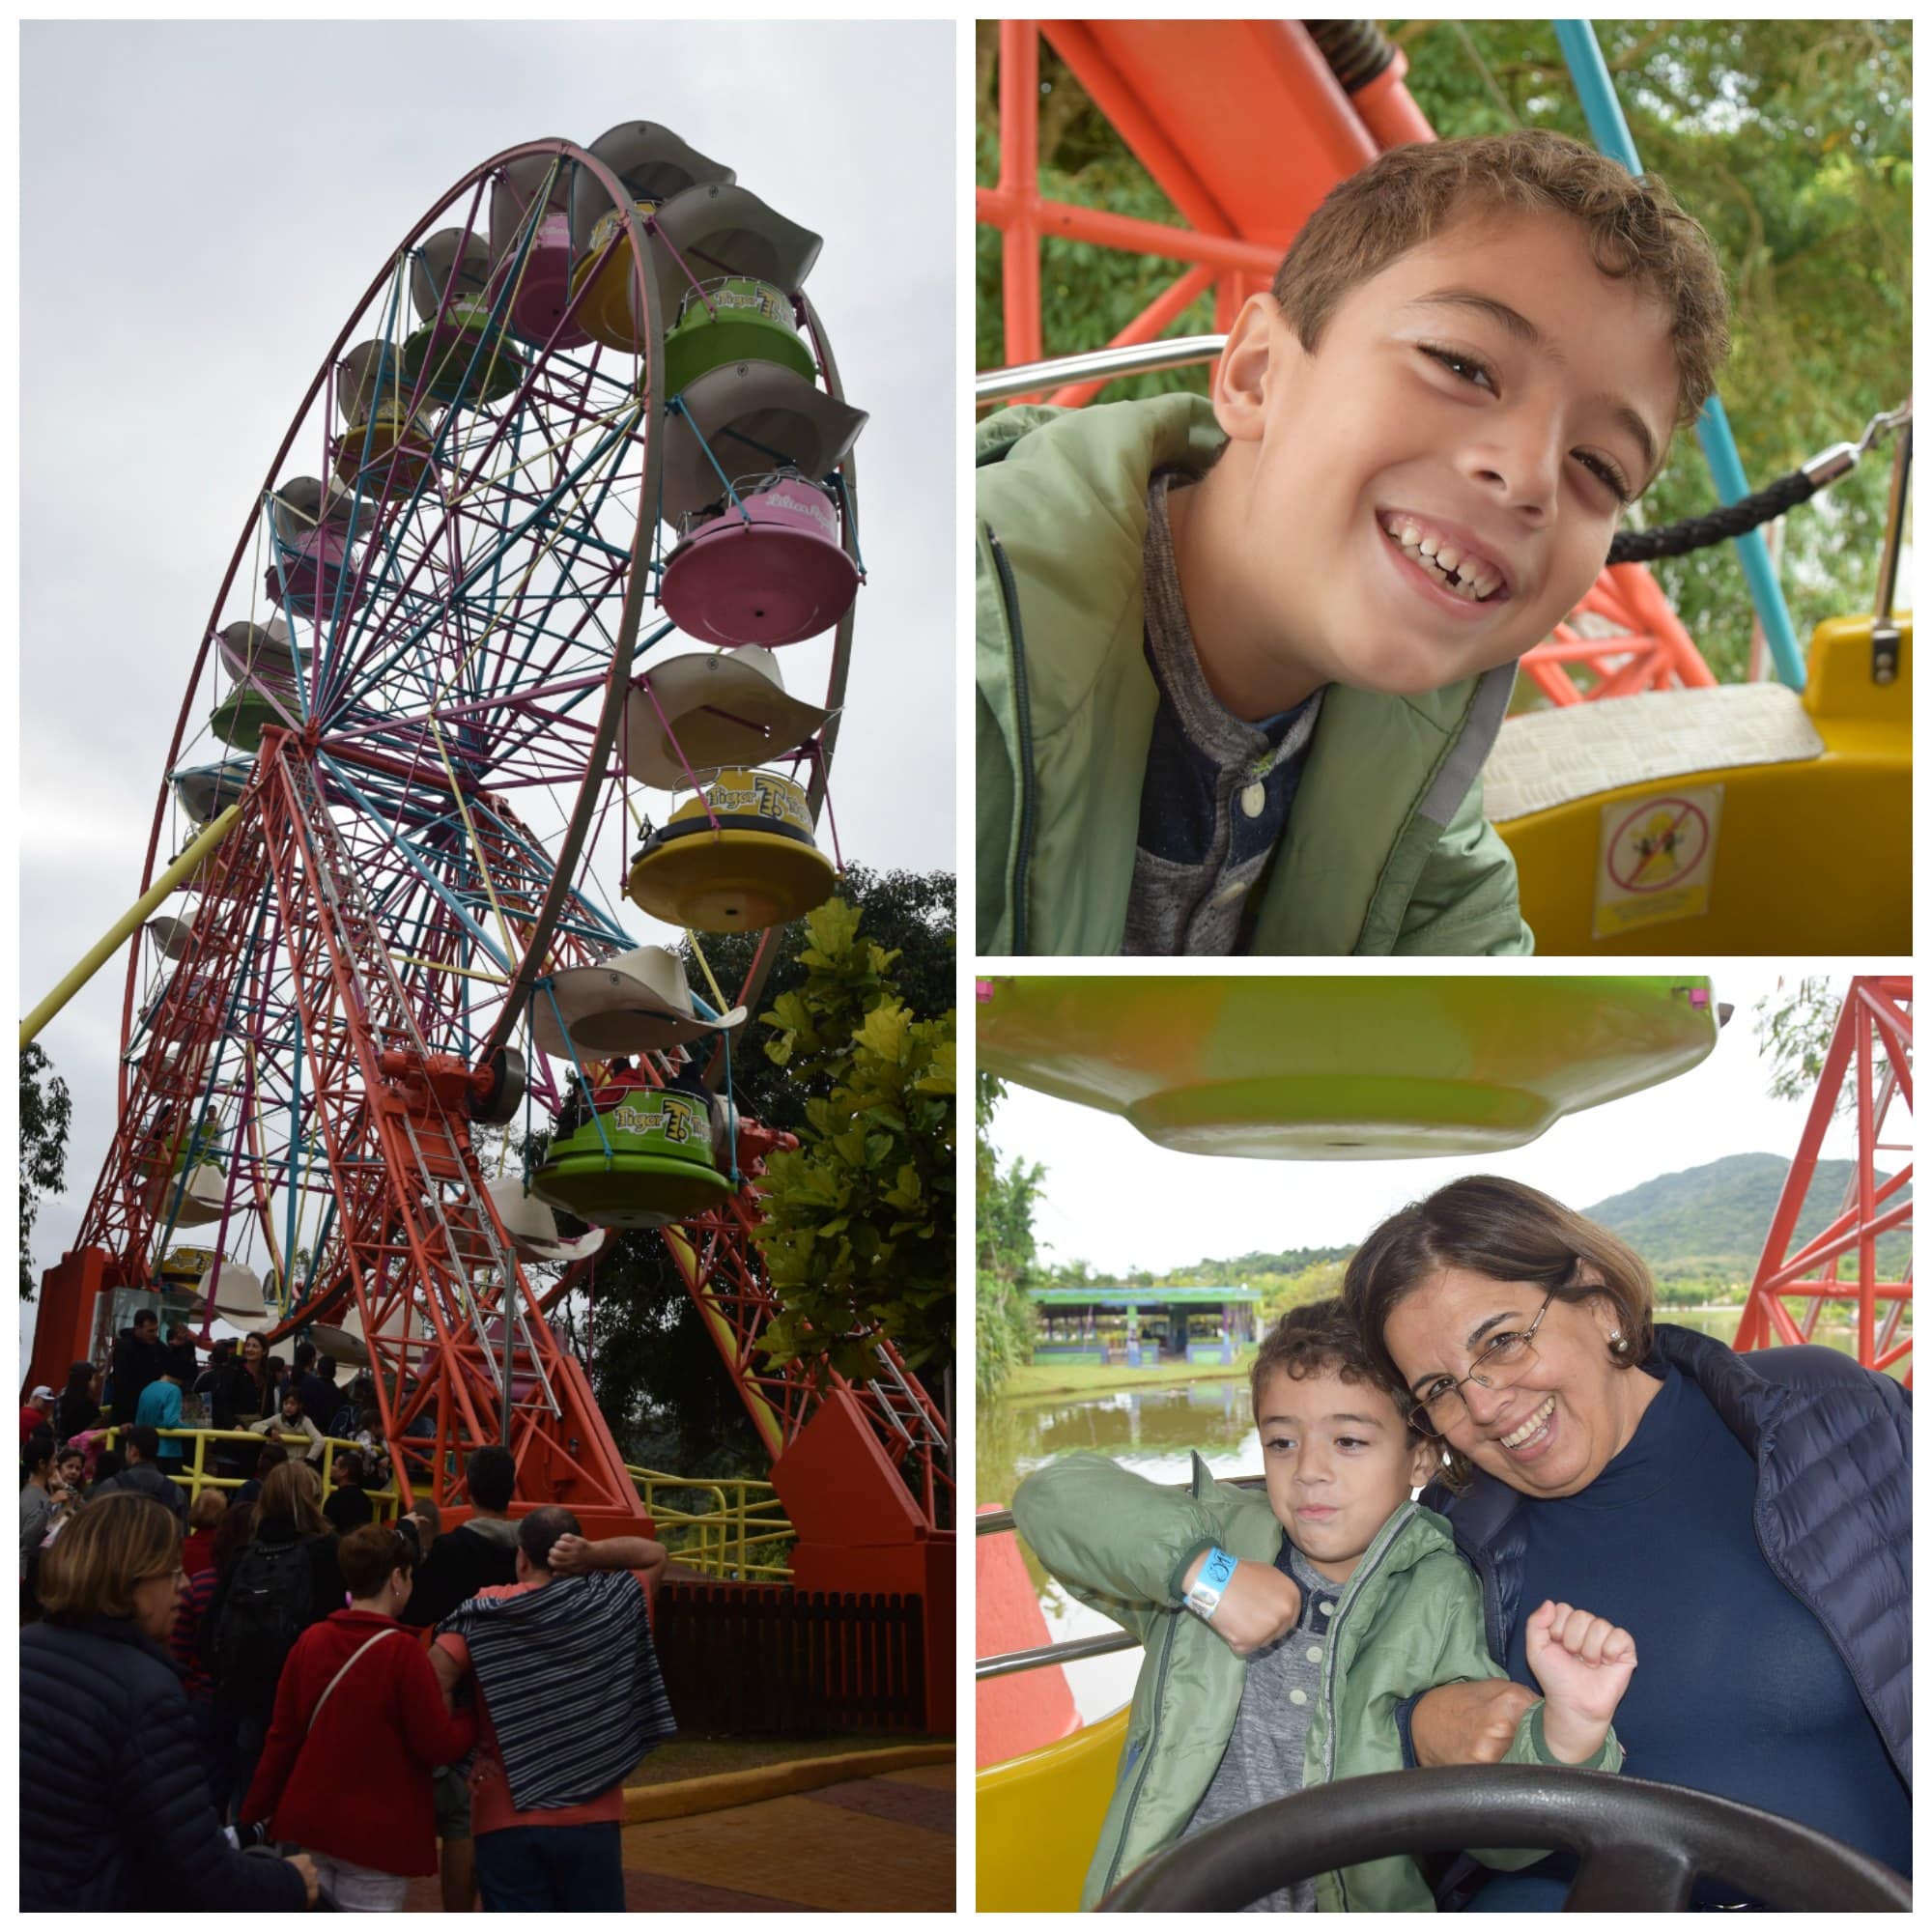 A Roda Gigante faz sucesso com as crianças no Beto Carrero! Veja o que mais tem para fazer no parque nesse post!